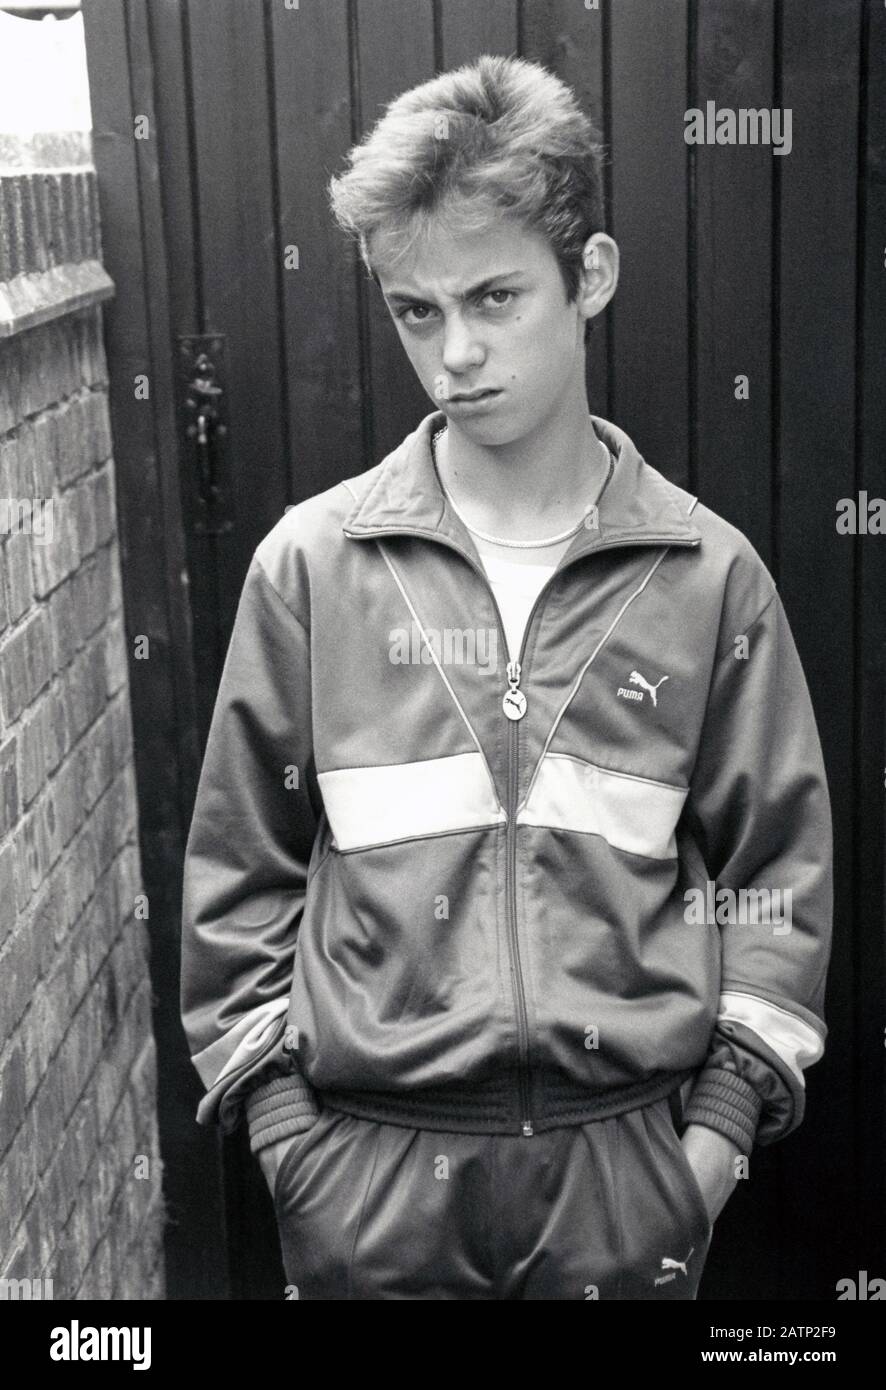 Teenage boy Nottingham UK 1988 Stock Photo